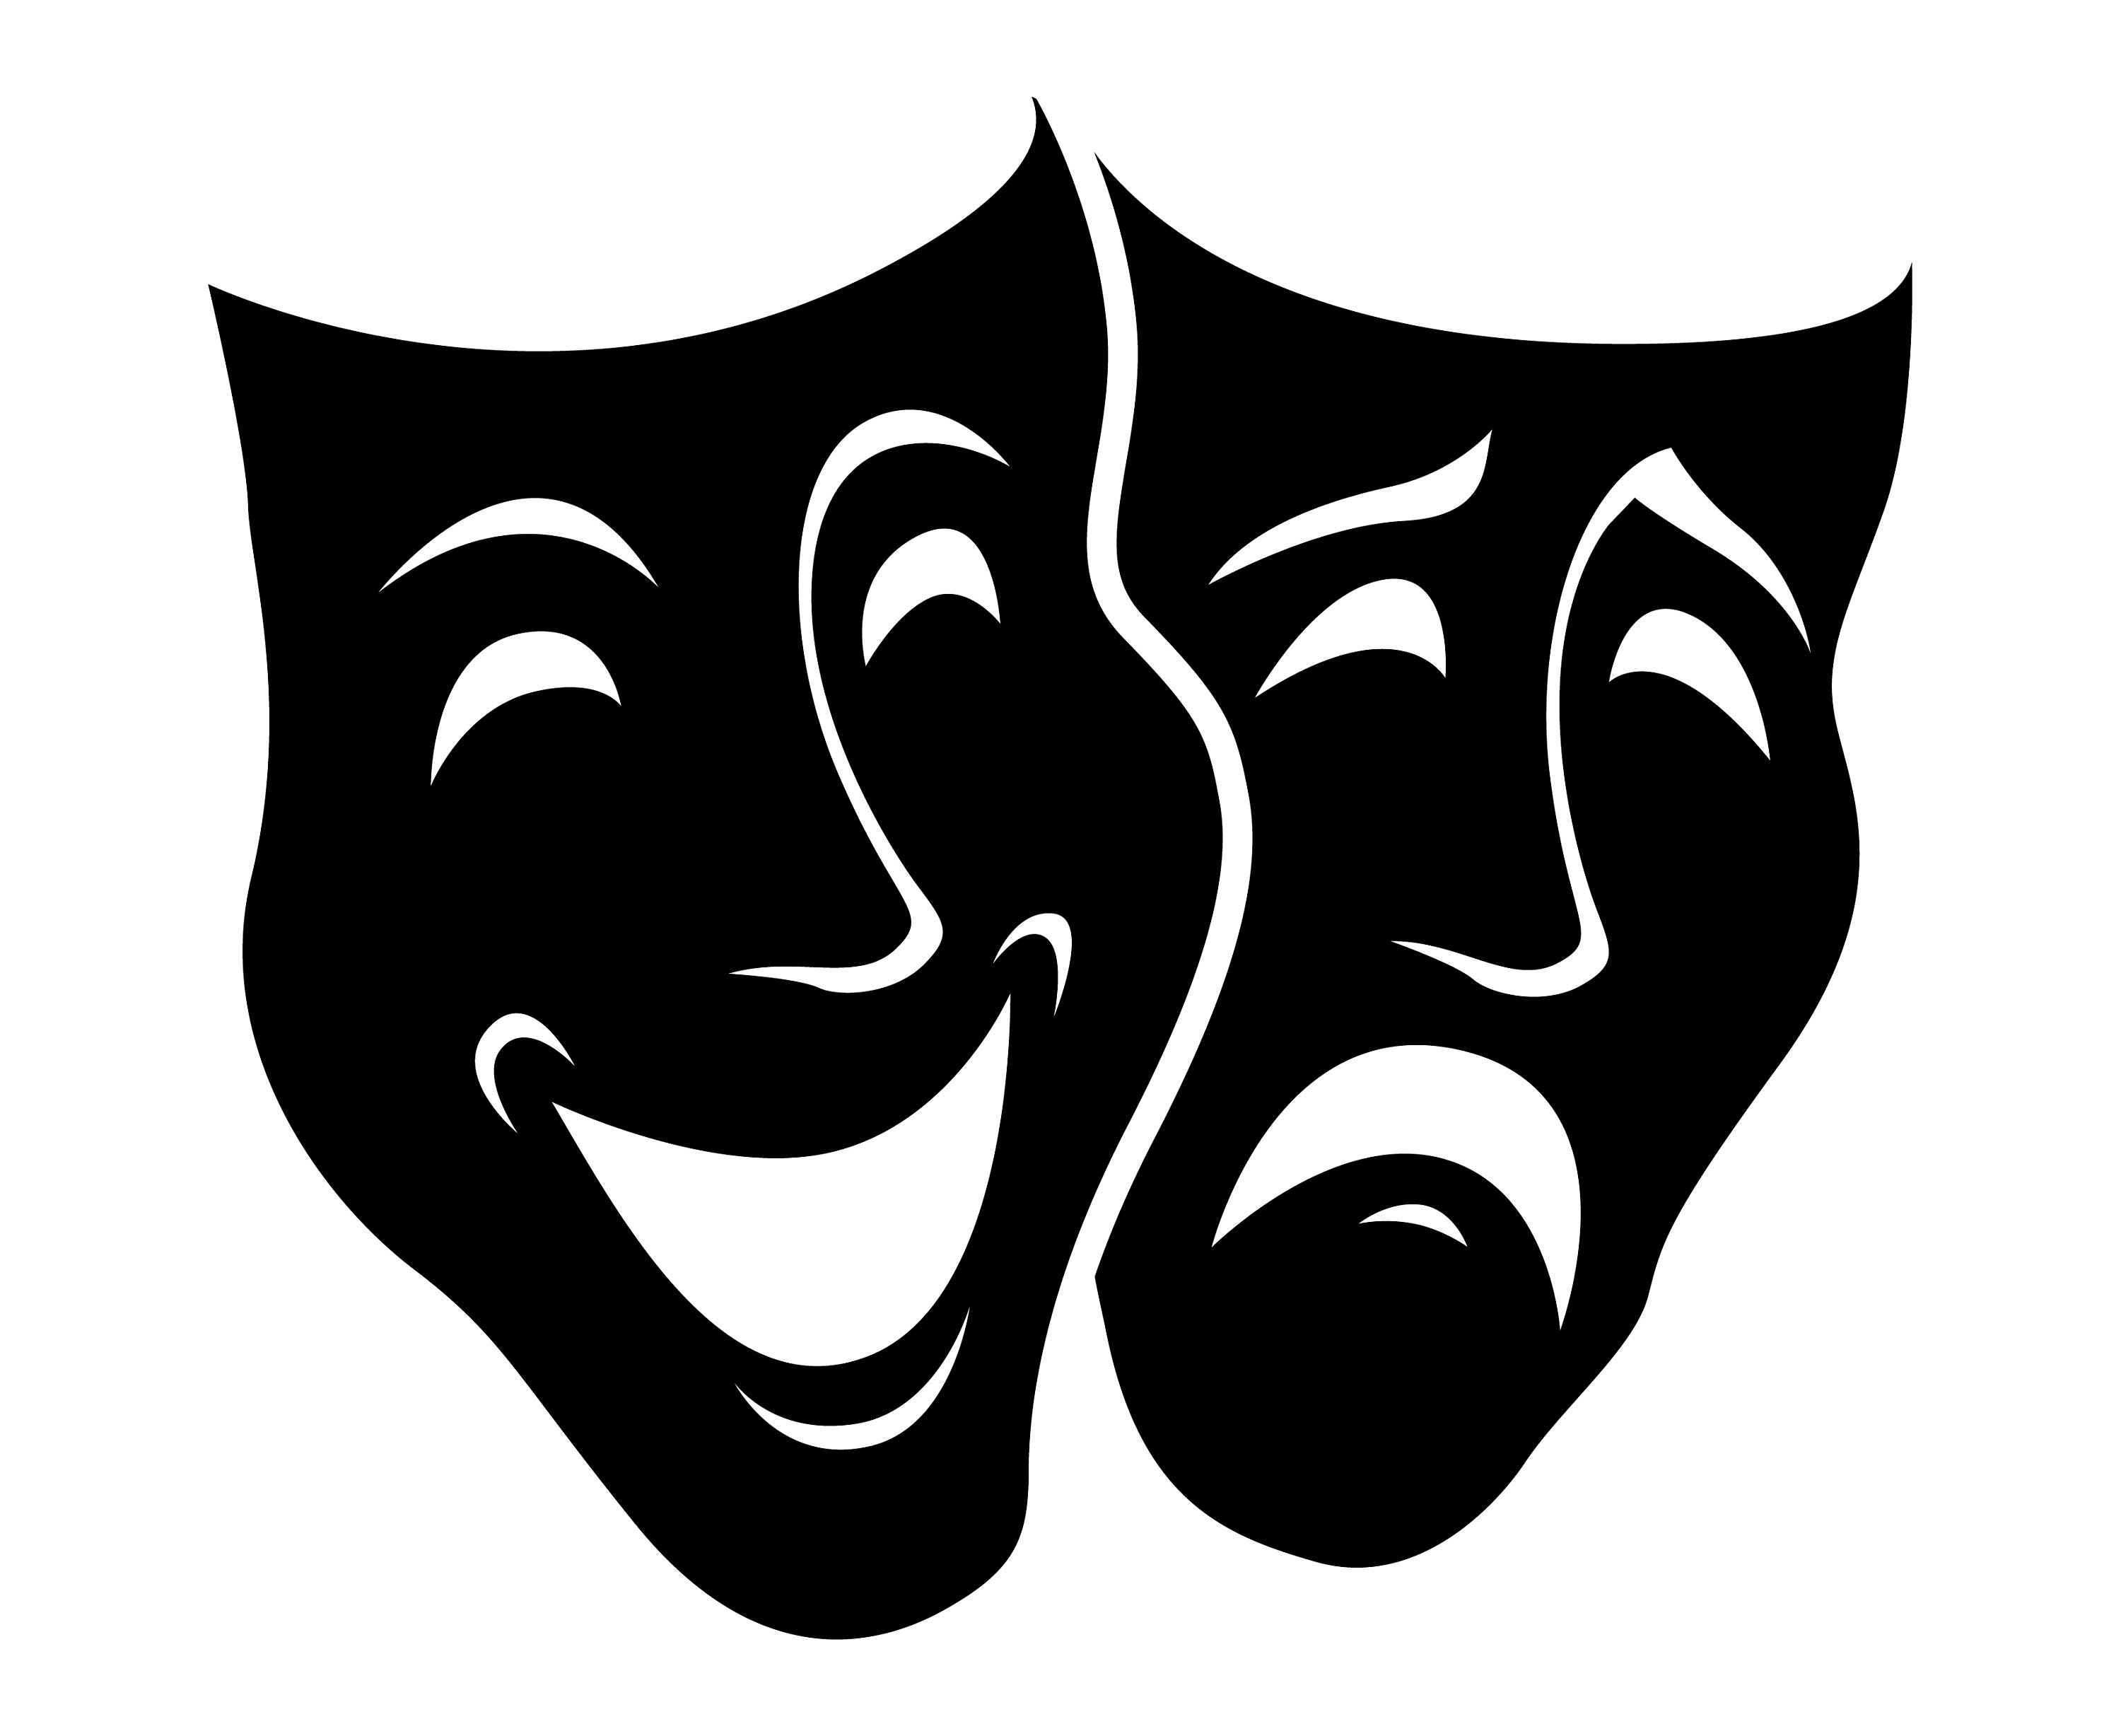 Театральная маска для печати. Театральные маски. Символ театра. Театральные маски силуэт. Театральный символ маски.